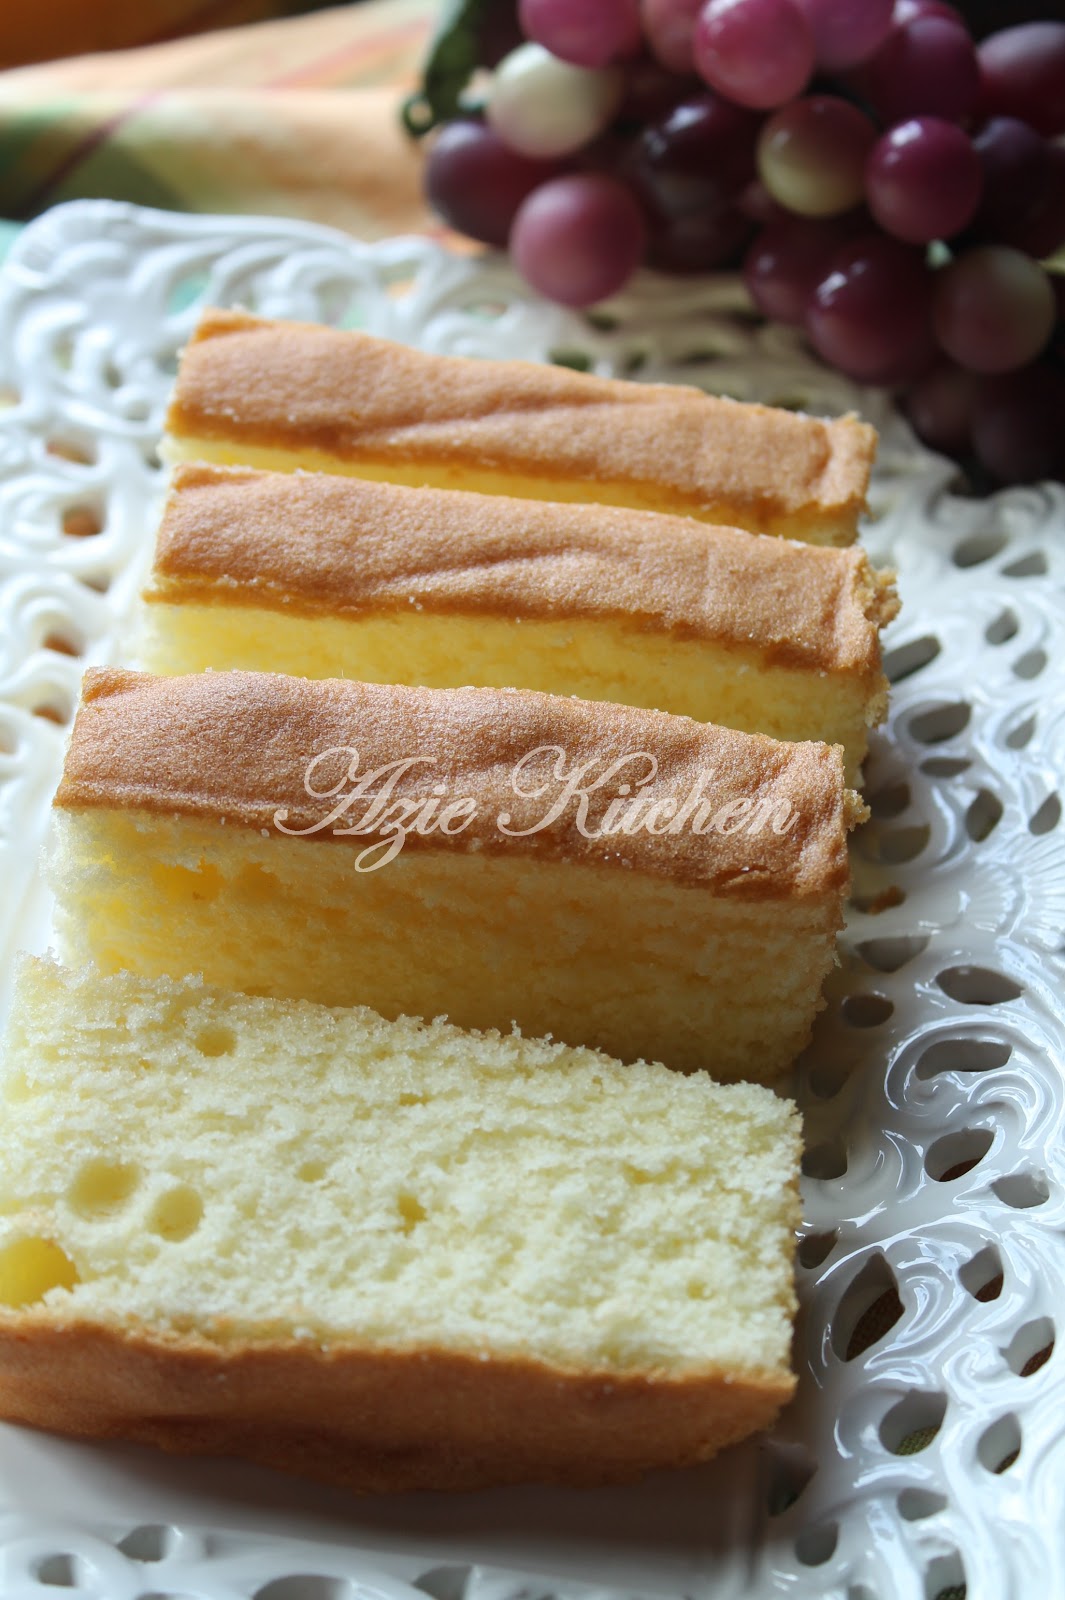 Vanilla Butter Cake - Azie Kitchen